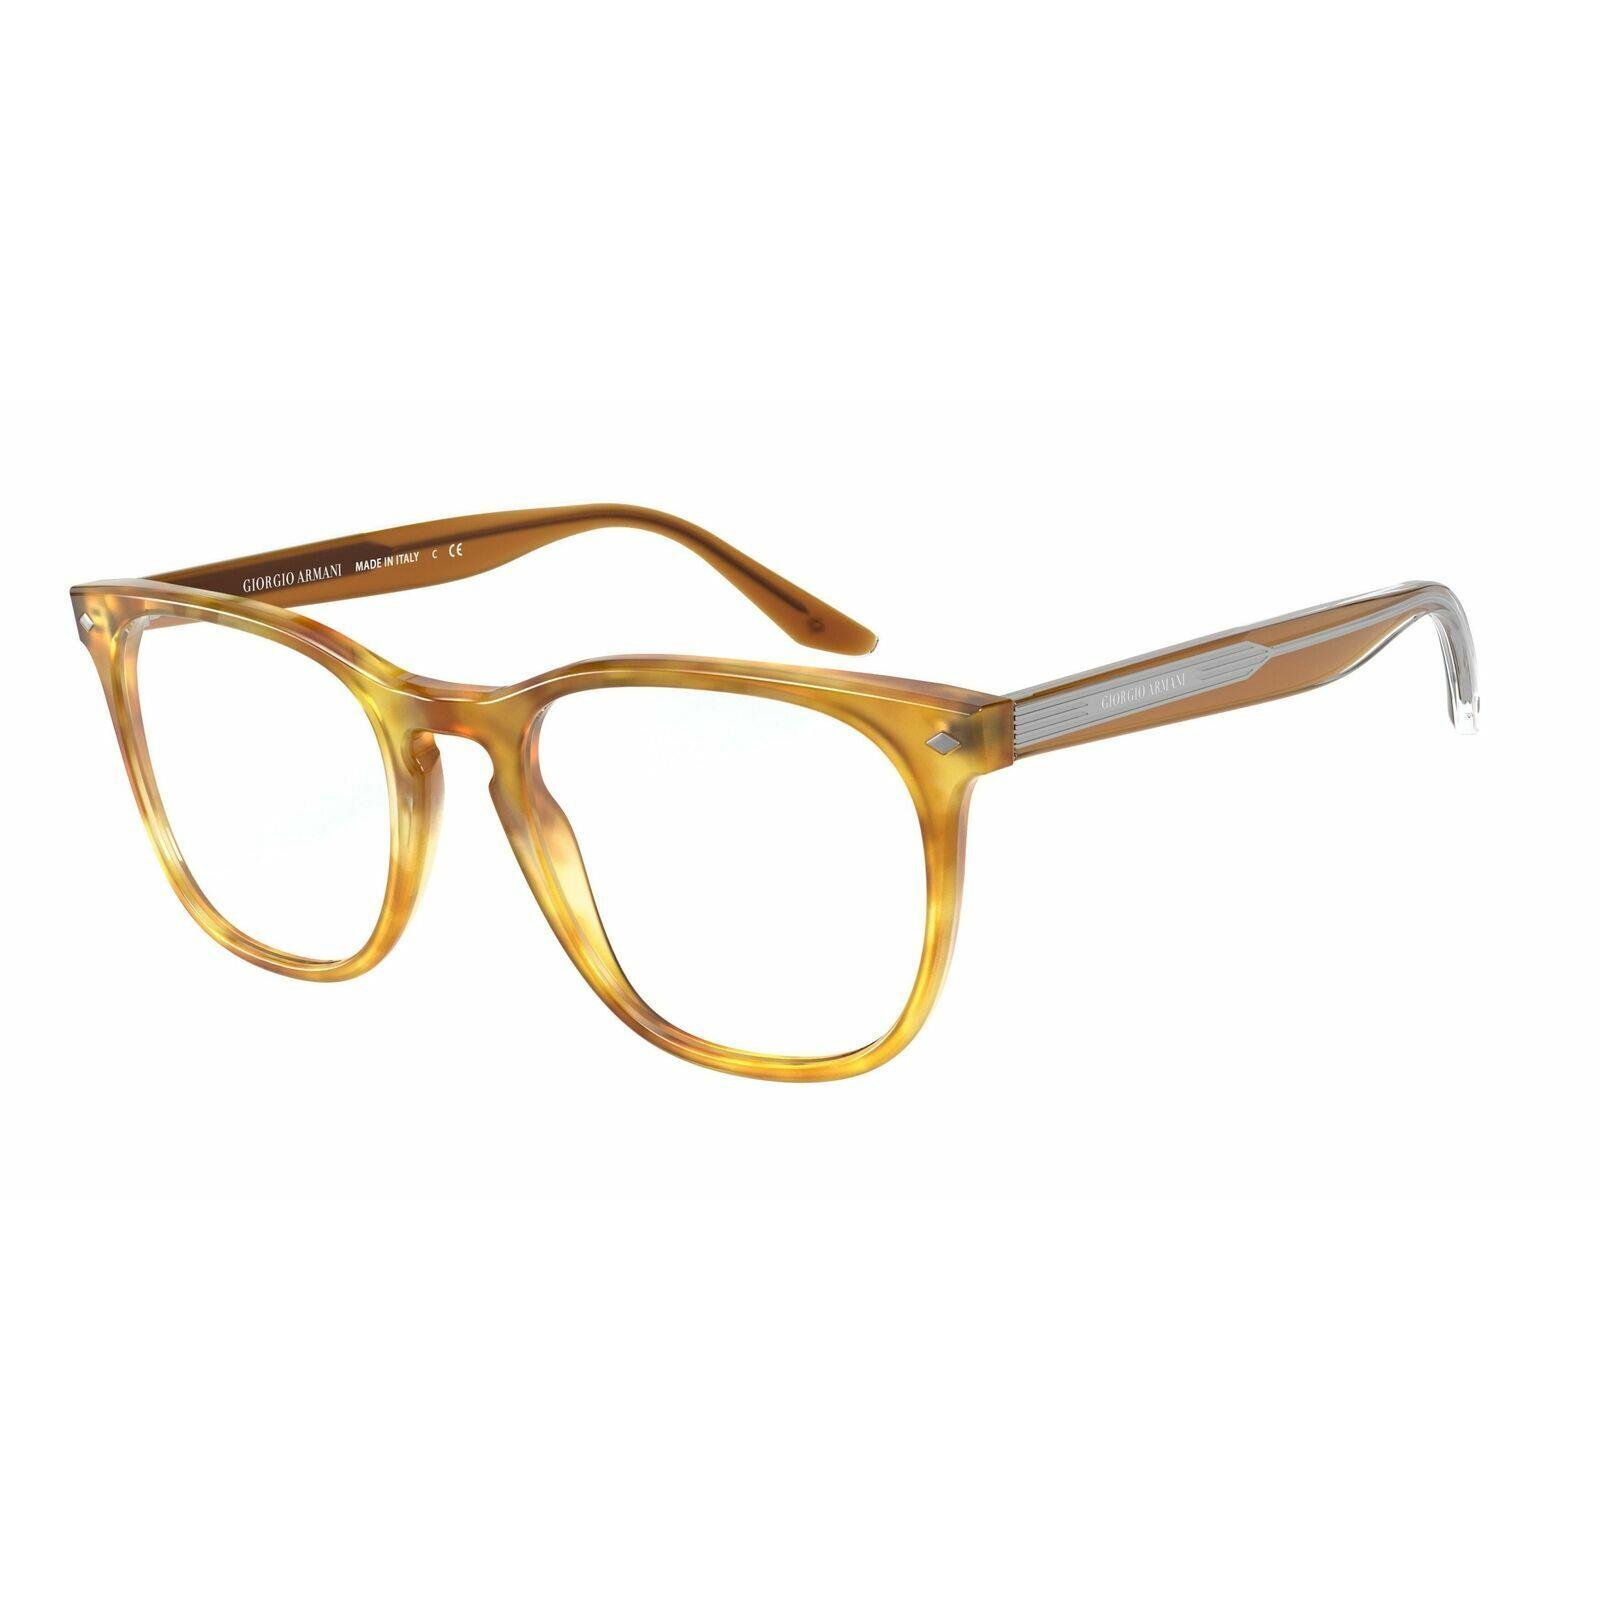 Giorgio Armani Eyeglasses AR7185 5761 Havana Frames 50mm Rx-able ST